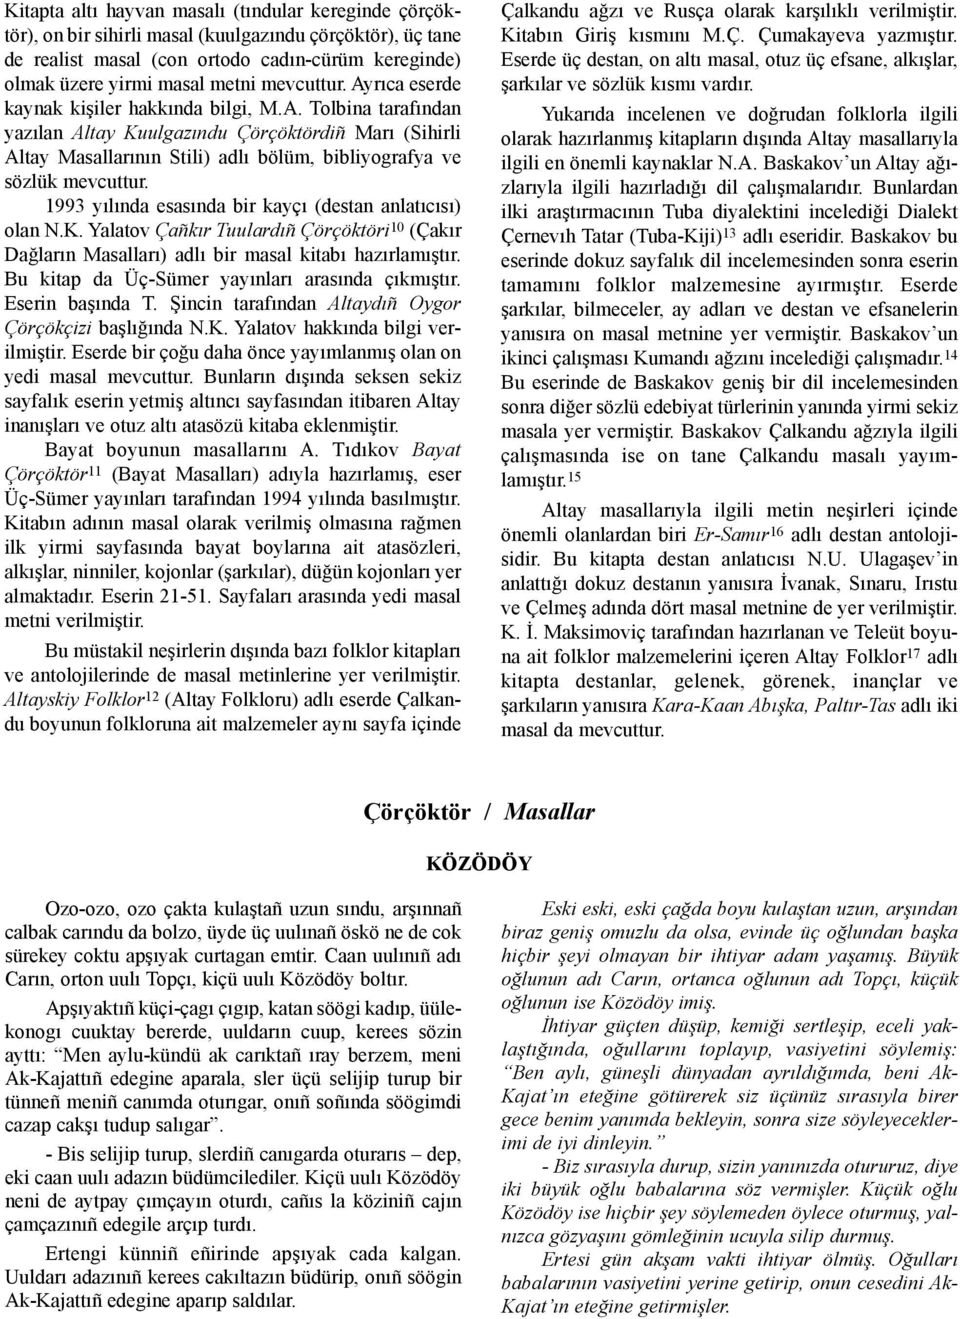 1993 yýlýnda esasýnda bir kayçý (destan anlatýcýsý) olan N.K. Yalatov Çañkýr Tuulardýñ Çörçöktöri 10 (Çakýr Daðlarýn Masallarý) adlý bir masal kitabý hazýrlamýþtýr.